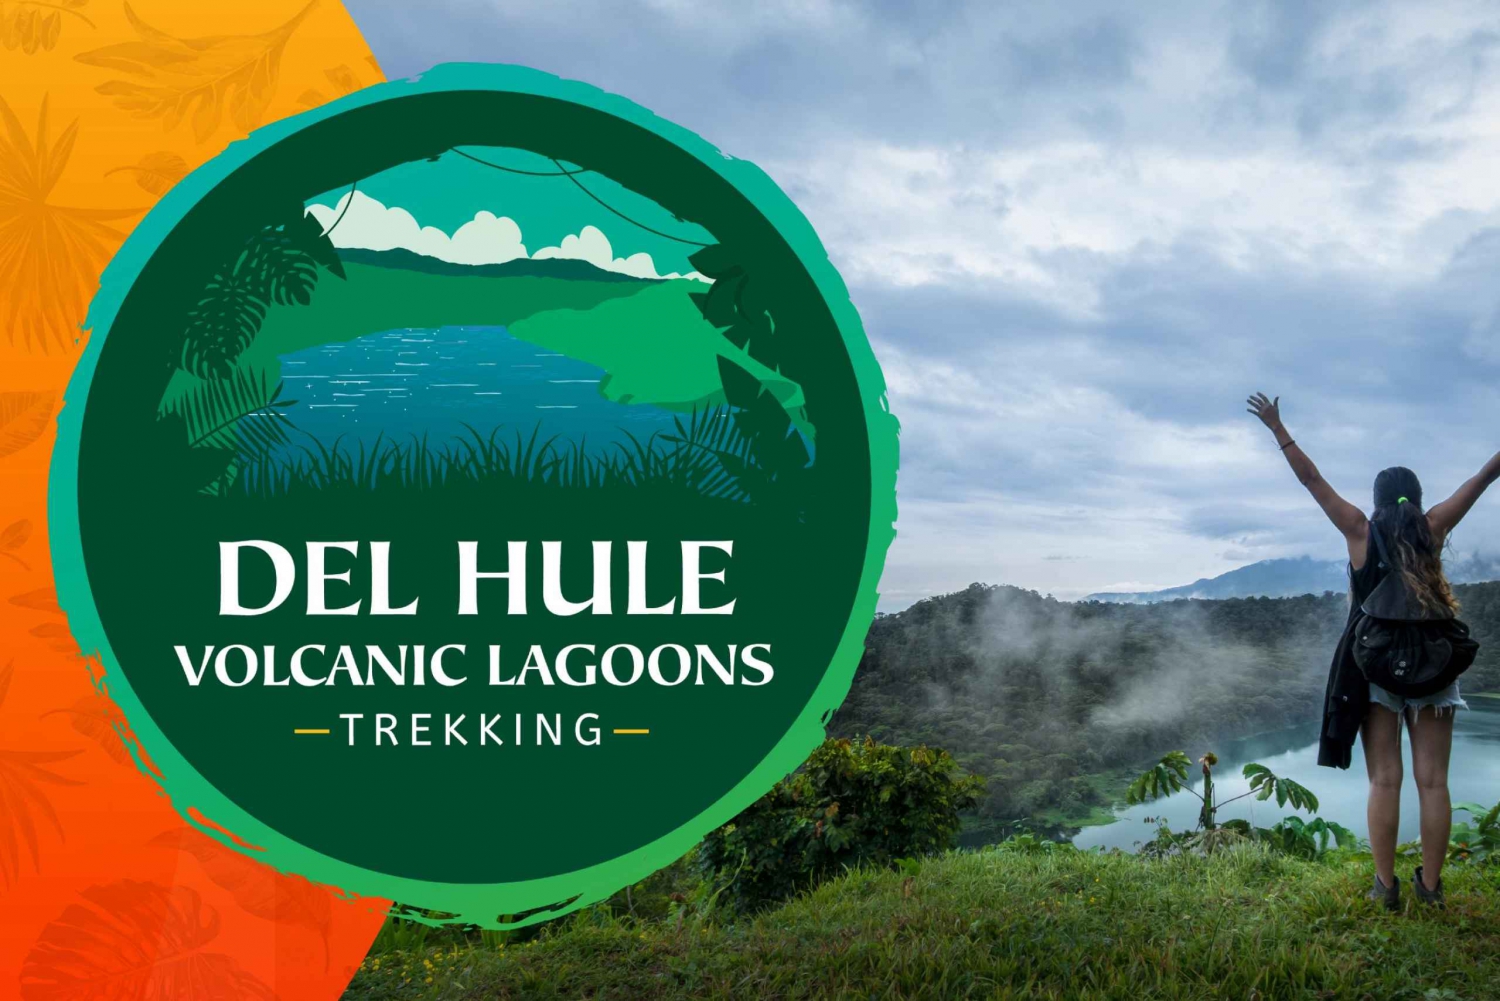 La Fortuna: Trekking w małej grupie w kraterze wulkanicznym laguny Hule